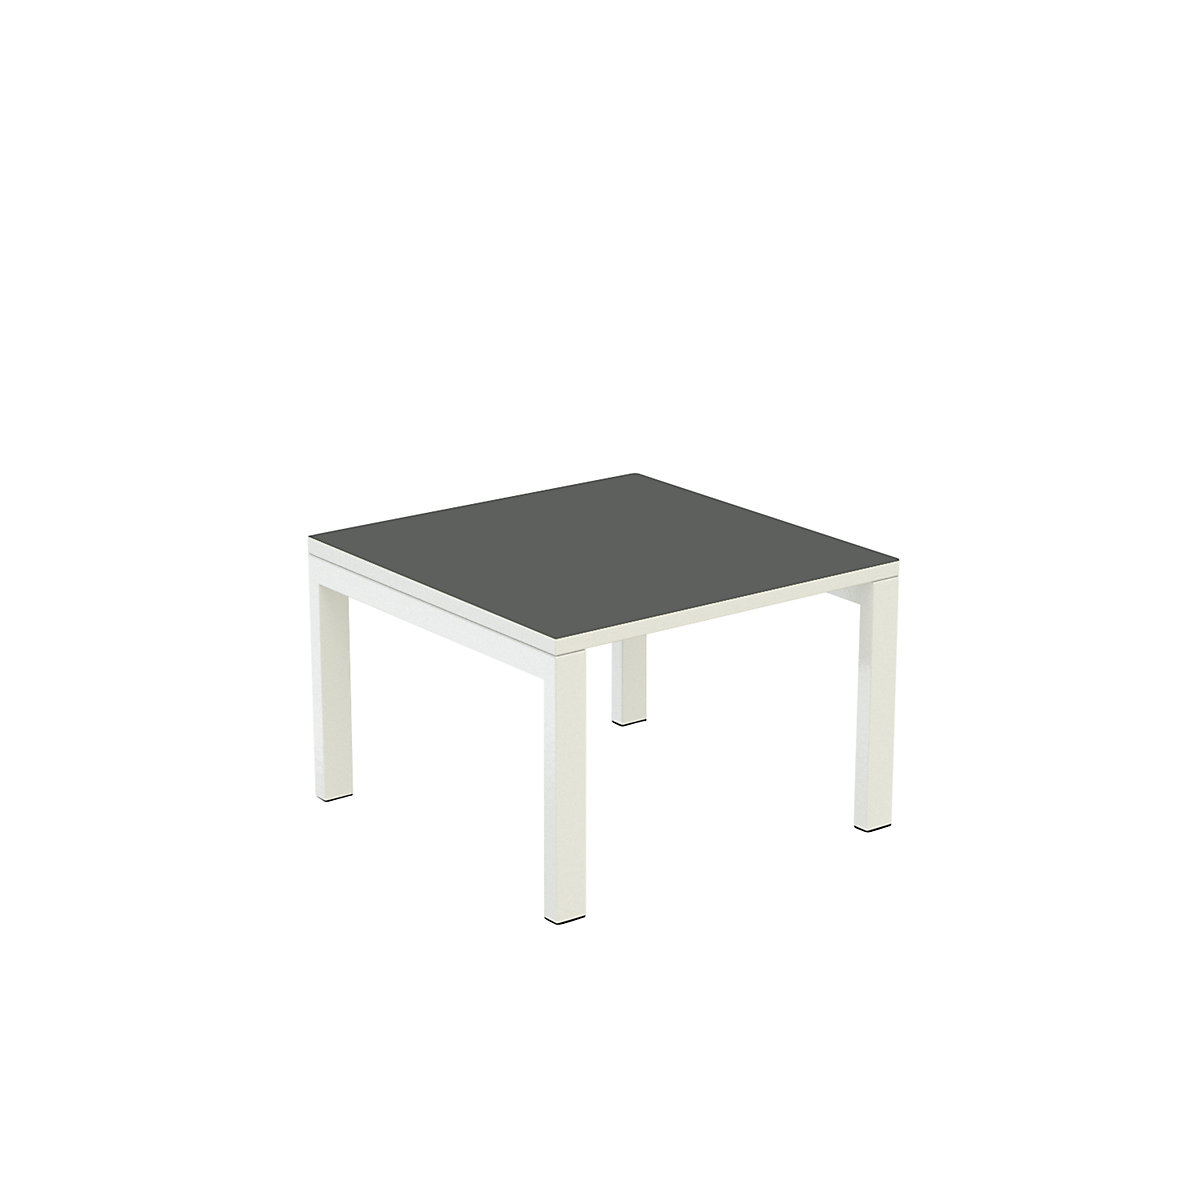 Príručný stolík easyDesk® – Paperflow, v x š x h 400 x 600 x 600 mm, antracitová-6